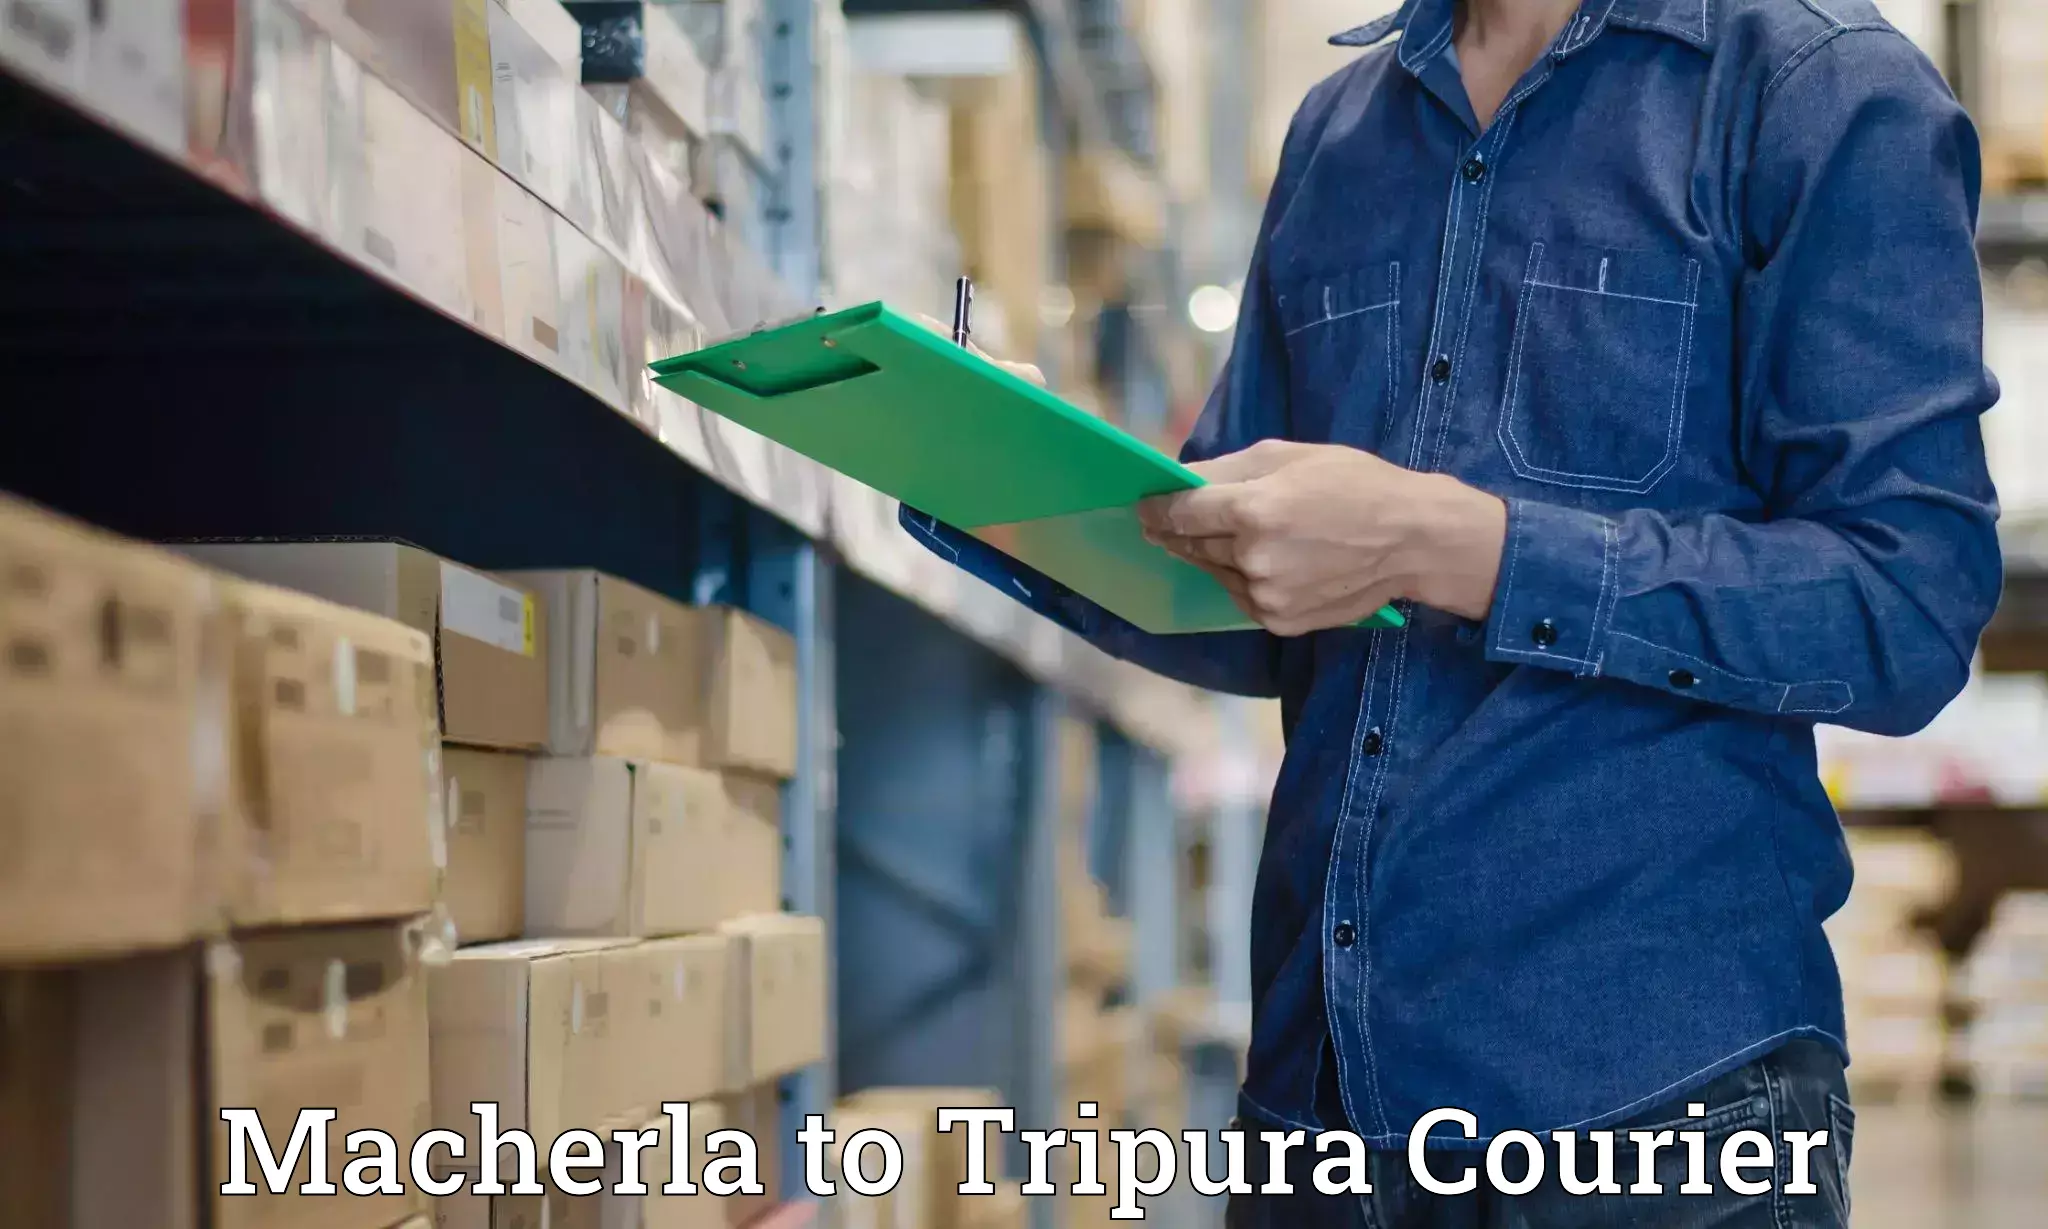 Urban courier service Macherla to North Tripura